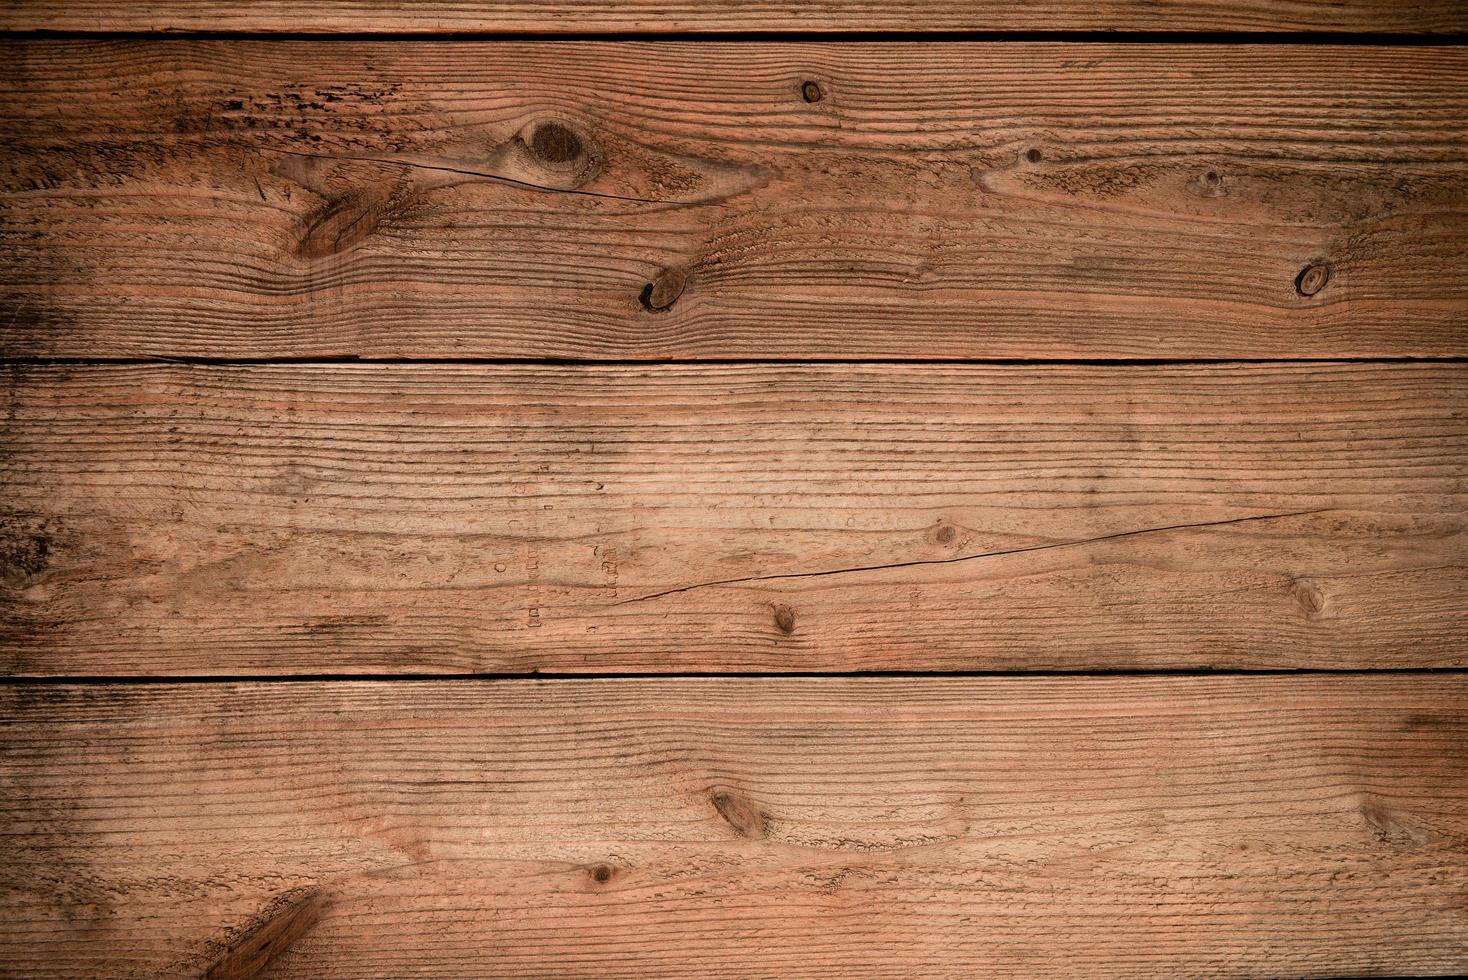 kleding molecuul liter houten structuur achtergrond. bruin hout textuur, oud hout structuur voor  toevoegen tekst of werk ontwerp voor backdrop Product. top visie - hout  voedsel tafel 15942510 Stockfoto